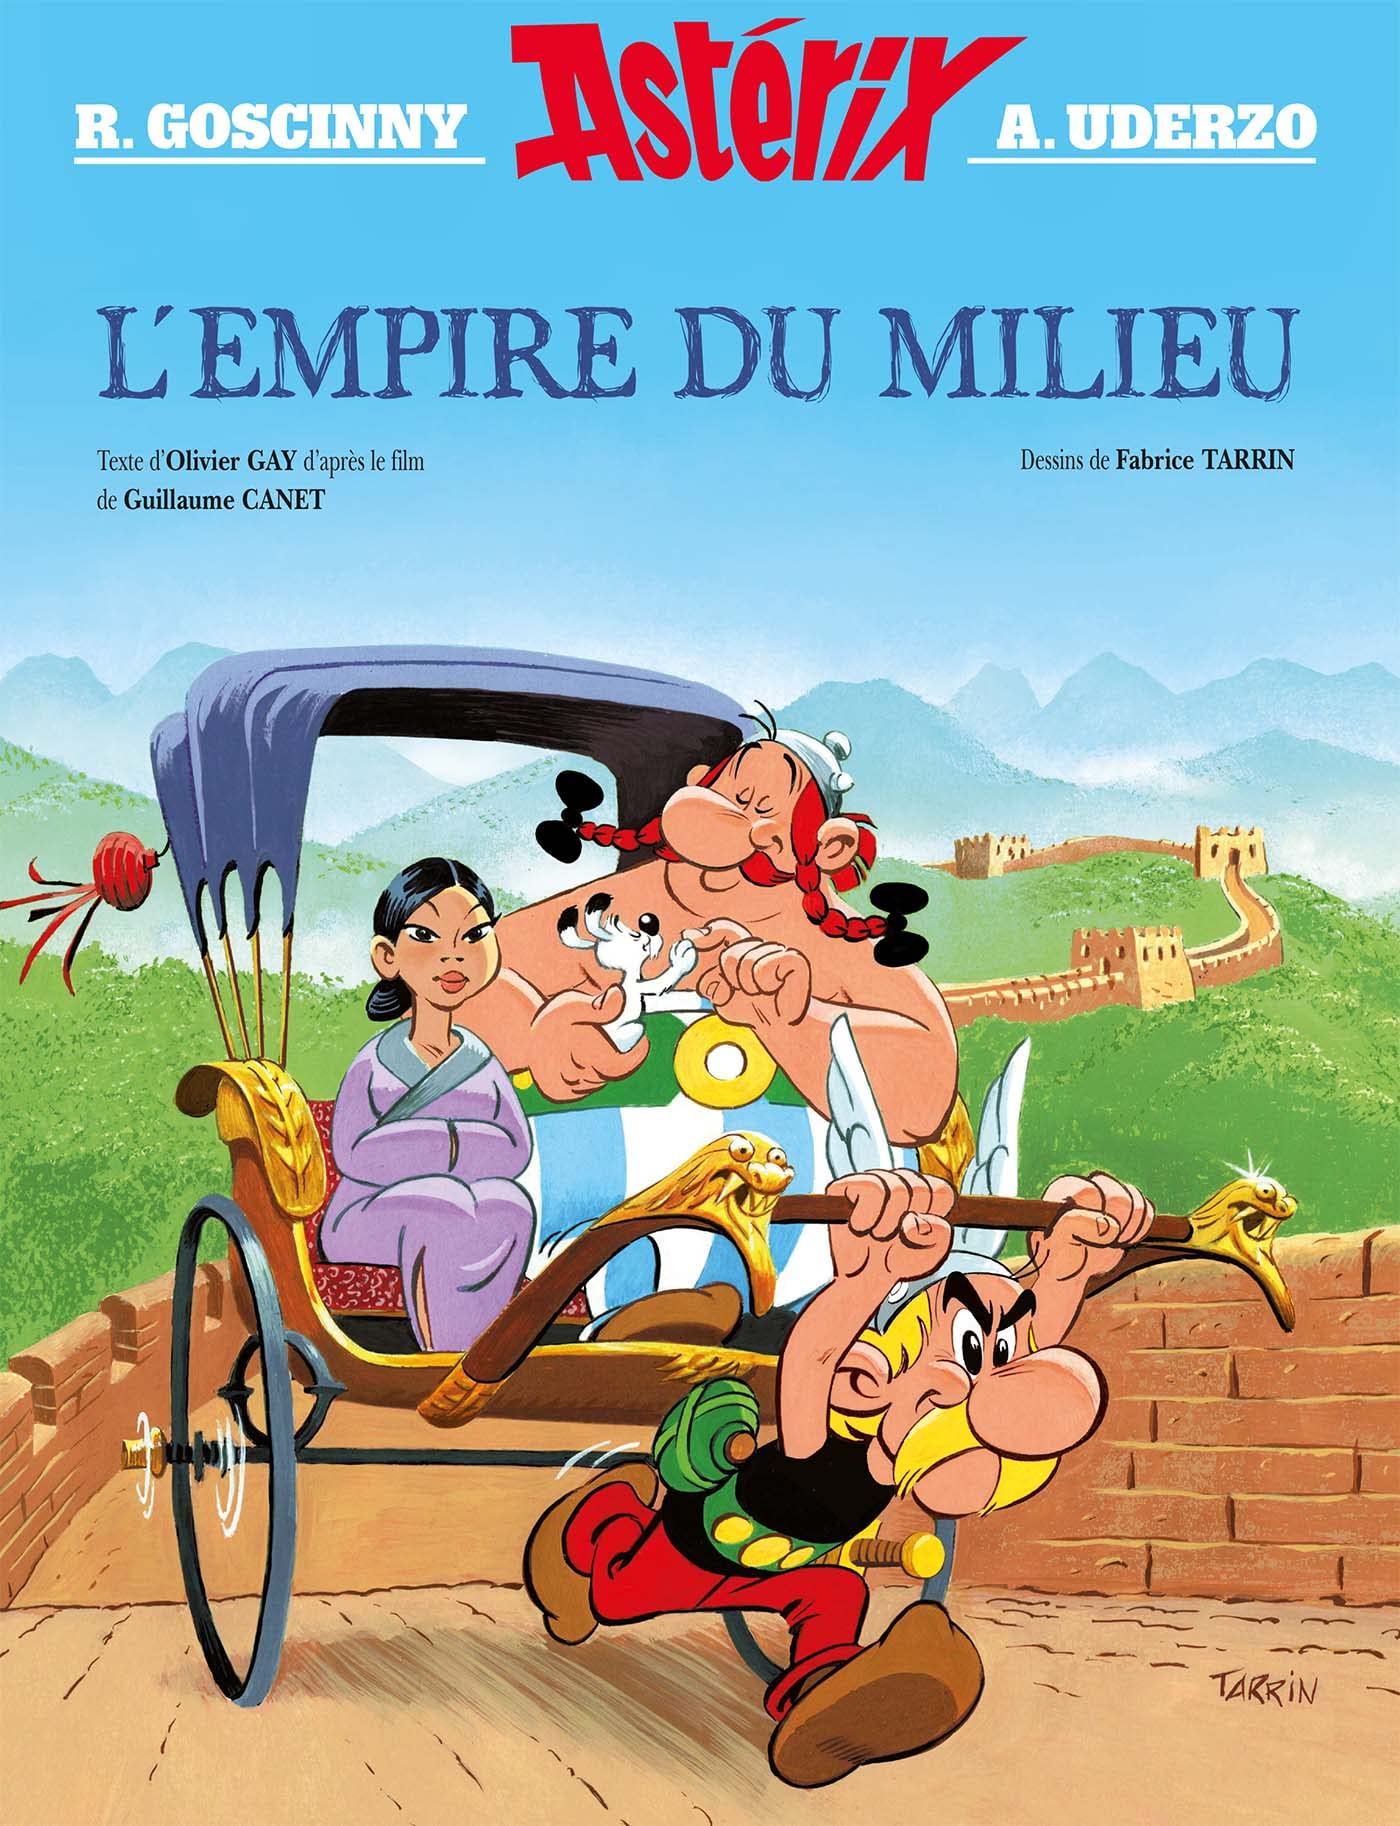 Astérix - Hors collection - Album illustré du film - L'Empire du Milieu - Bande dessinée (relié)